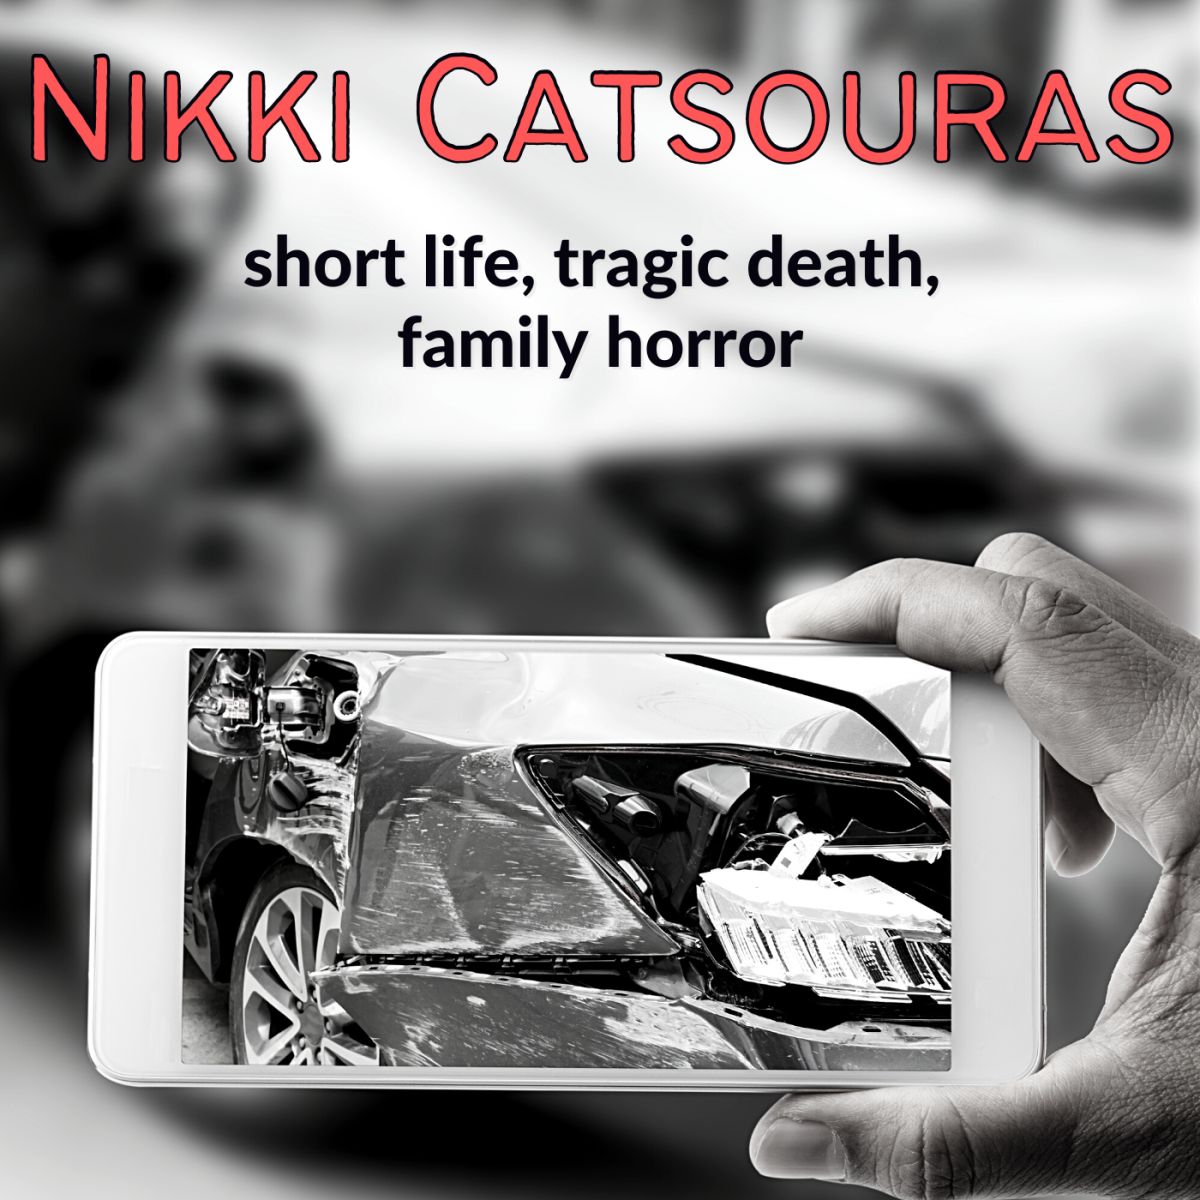 The "Porsche girl" Nikki Catsouras died in a violent highway accident.